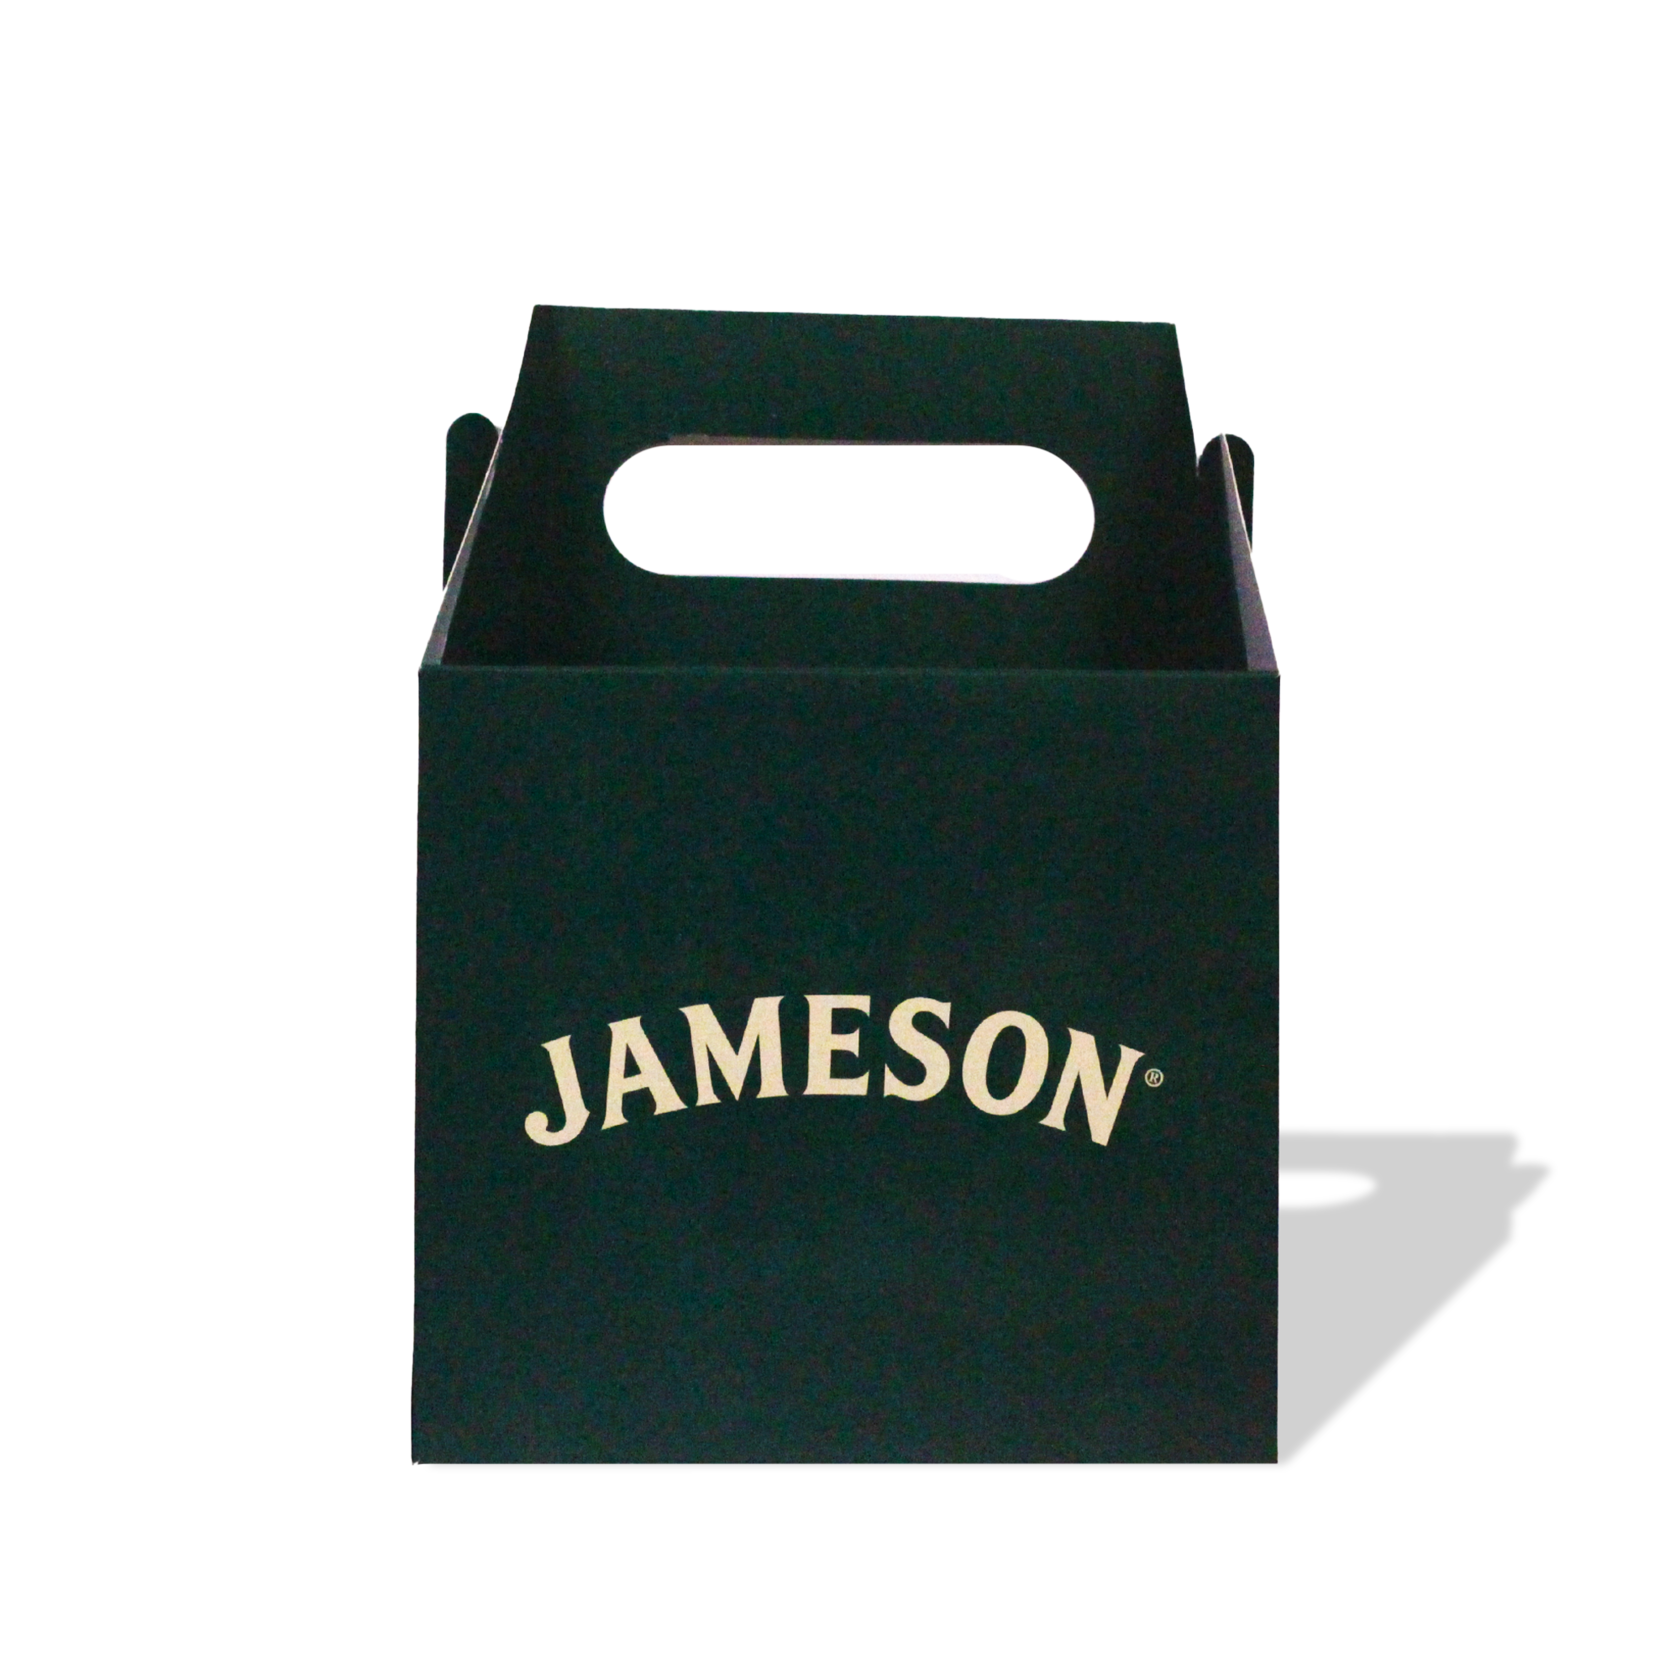 Jameson Packaging